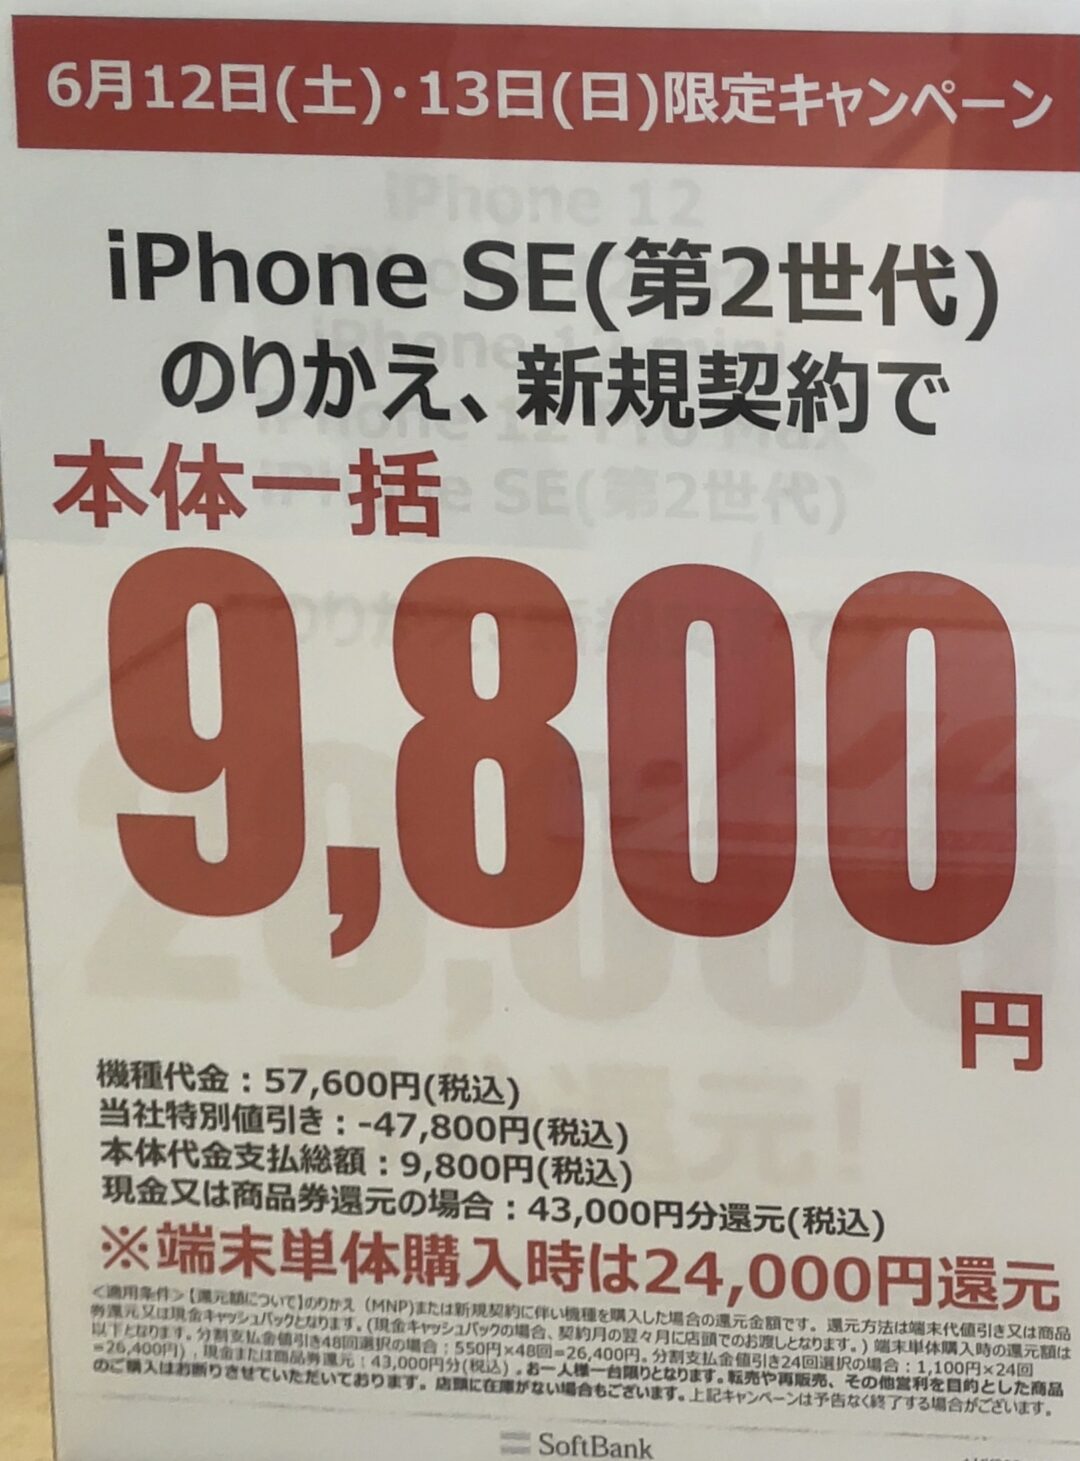 6 12 土 13 日 限定 ヤマダ電機でソフトバンクのiphone Se の64gbが新規とmnpで一括9 800円 端末のみでも2 4万円還元で一括3 3万円